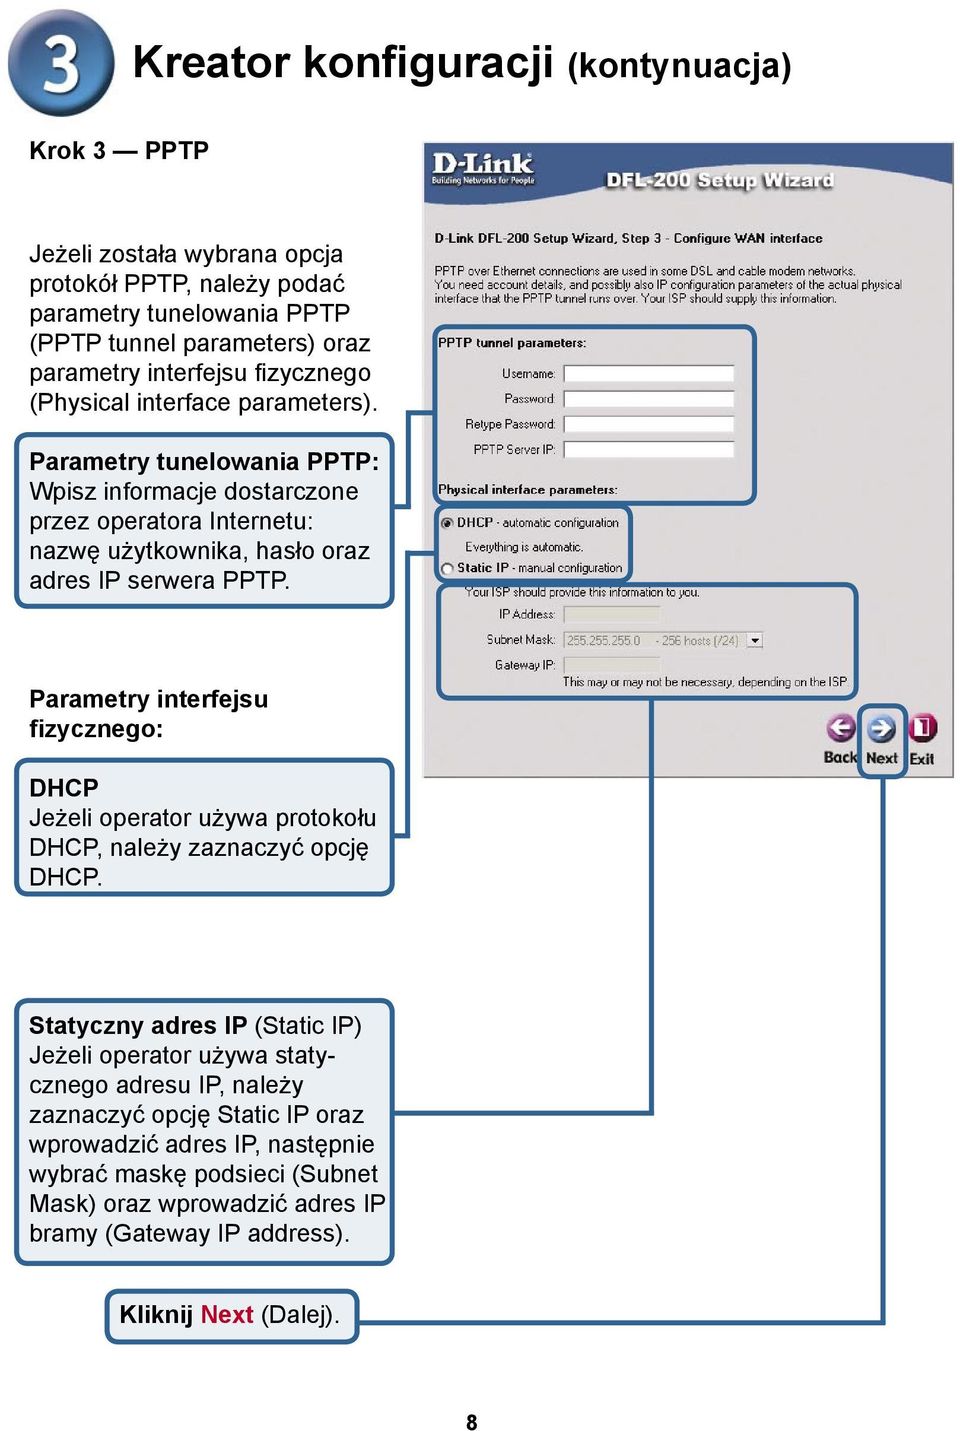 Parametry tunelowania PPTP: Wpisz informacje dostarczone przez operatora Internetu: nazwę użytkownika, hasło oraz adres IP serwera PPTP.